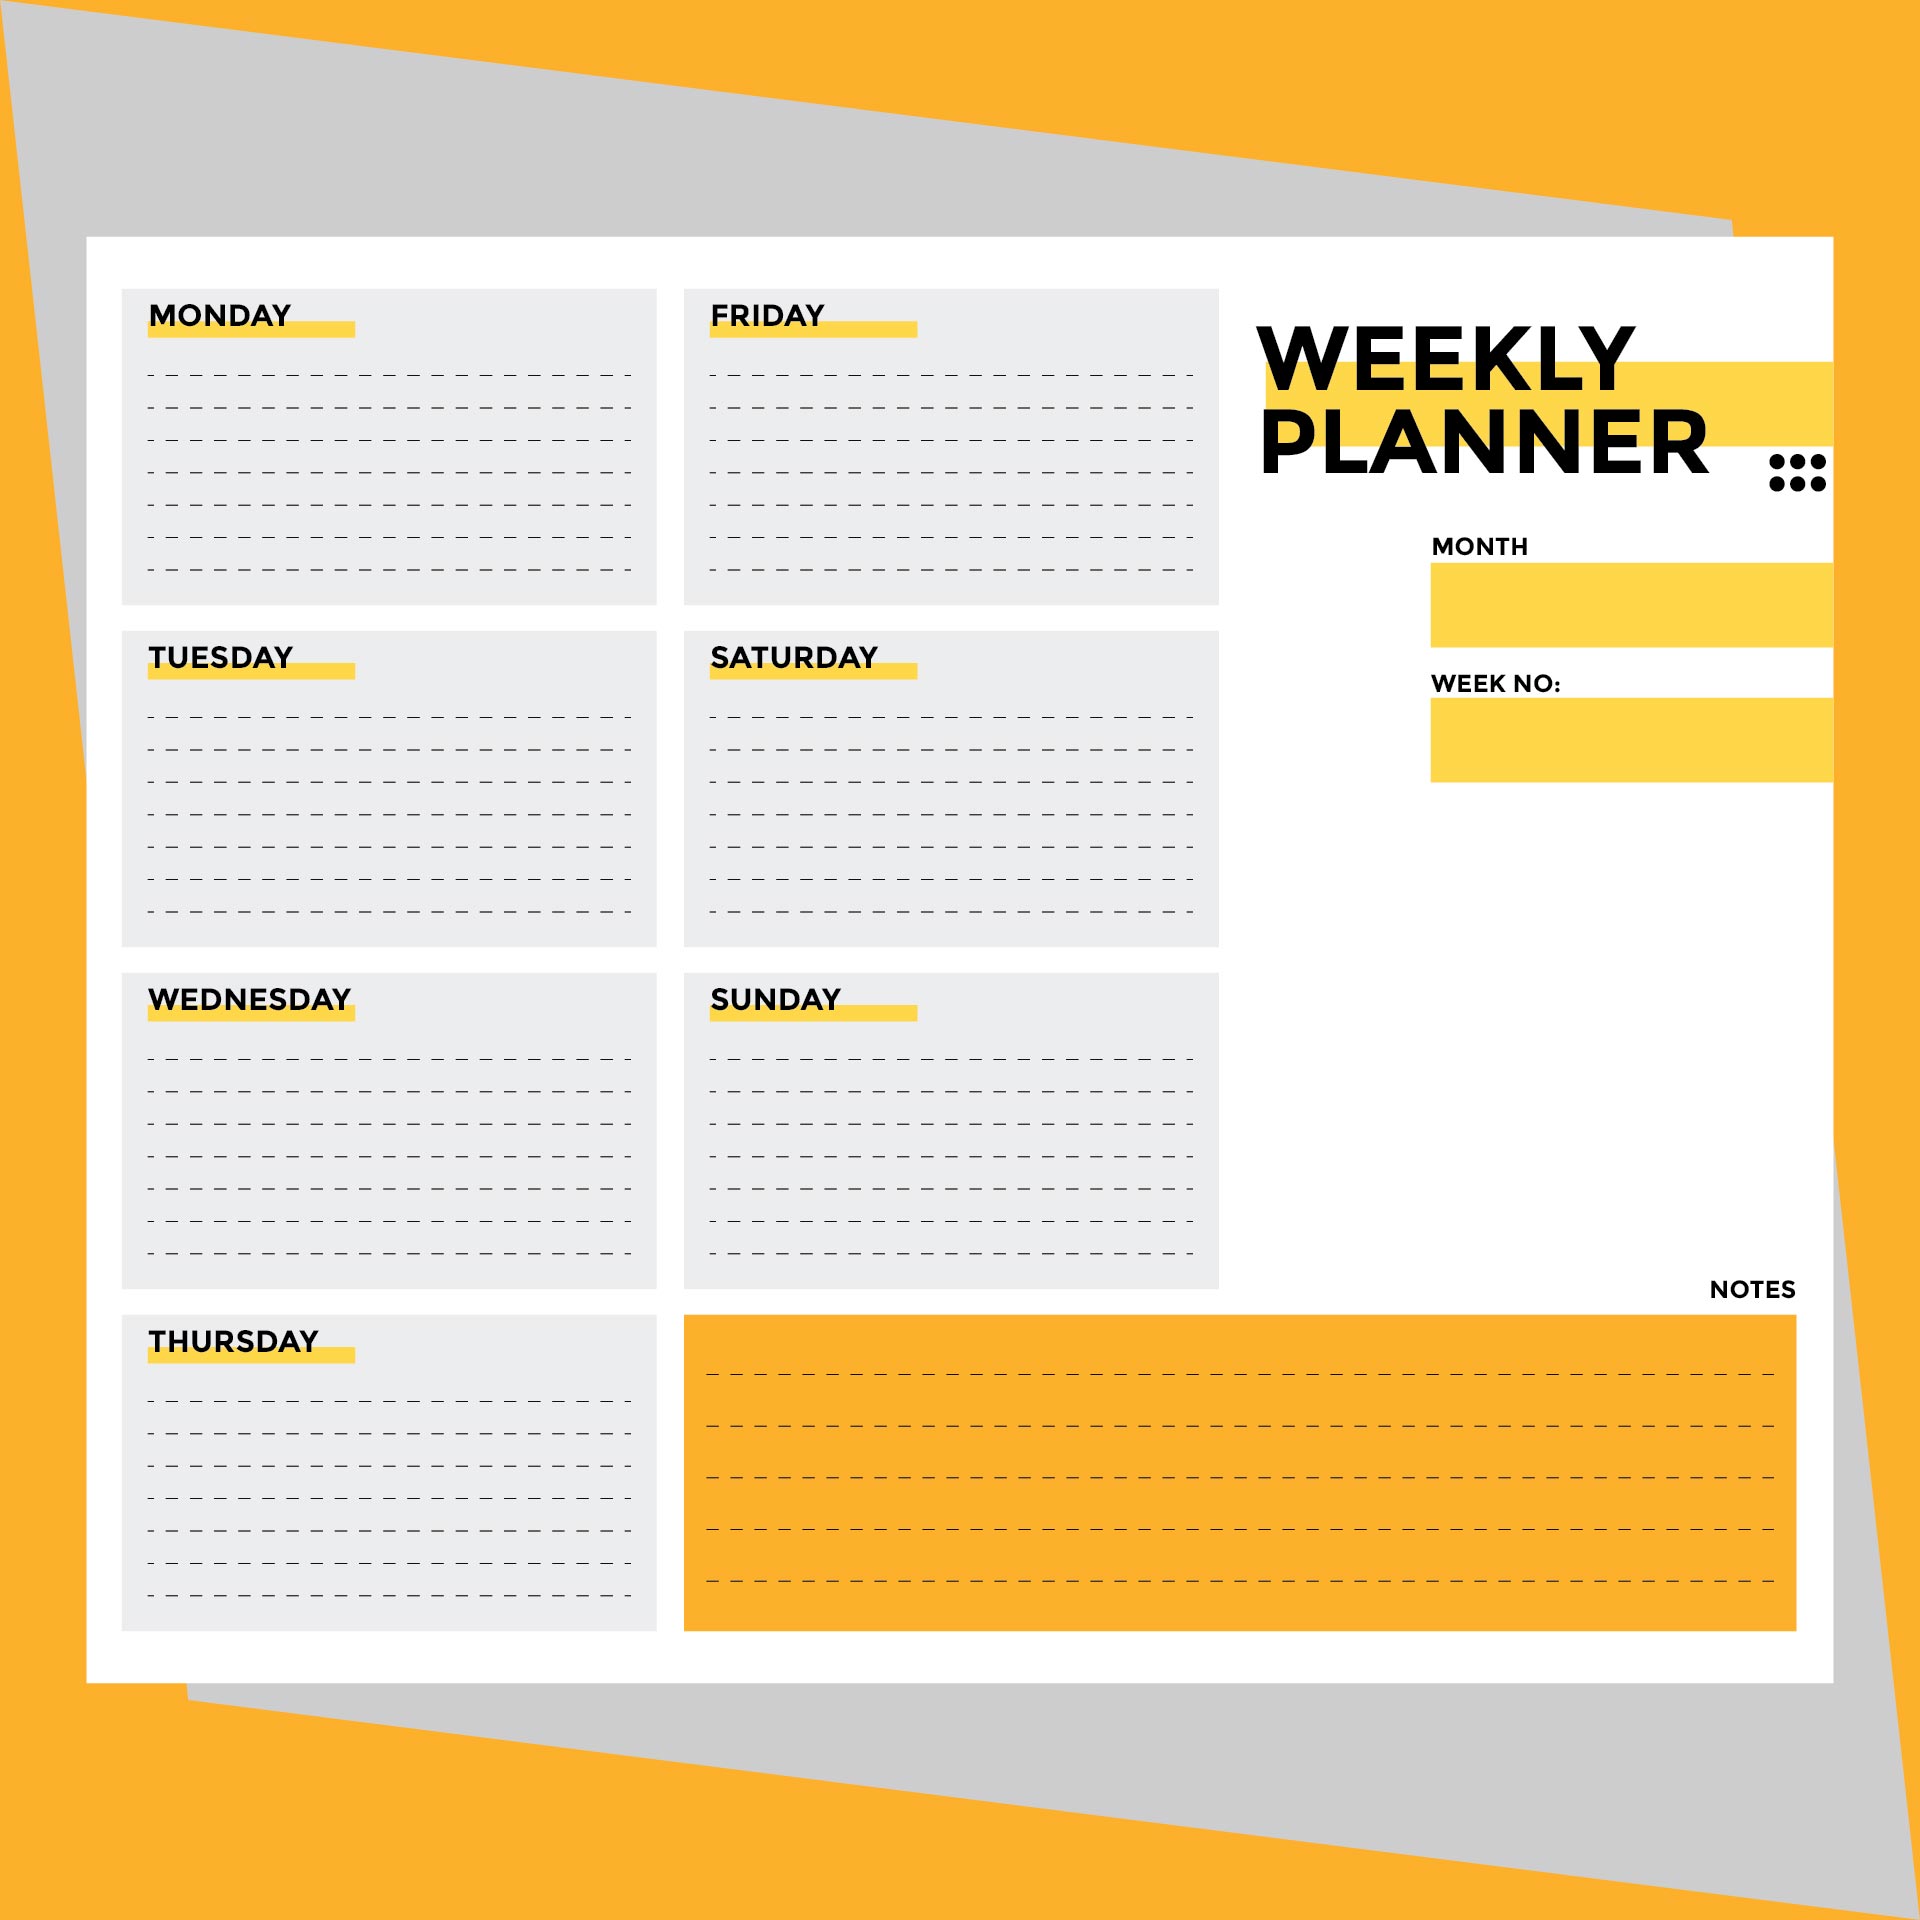 9-best-images-of-weekly-planner-printable-pdf-weekly-planner-template